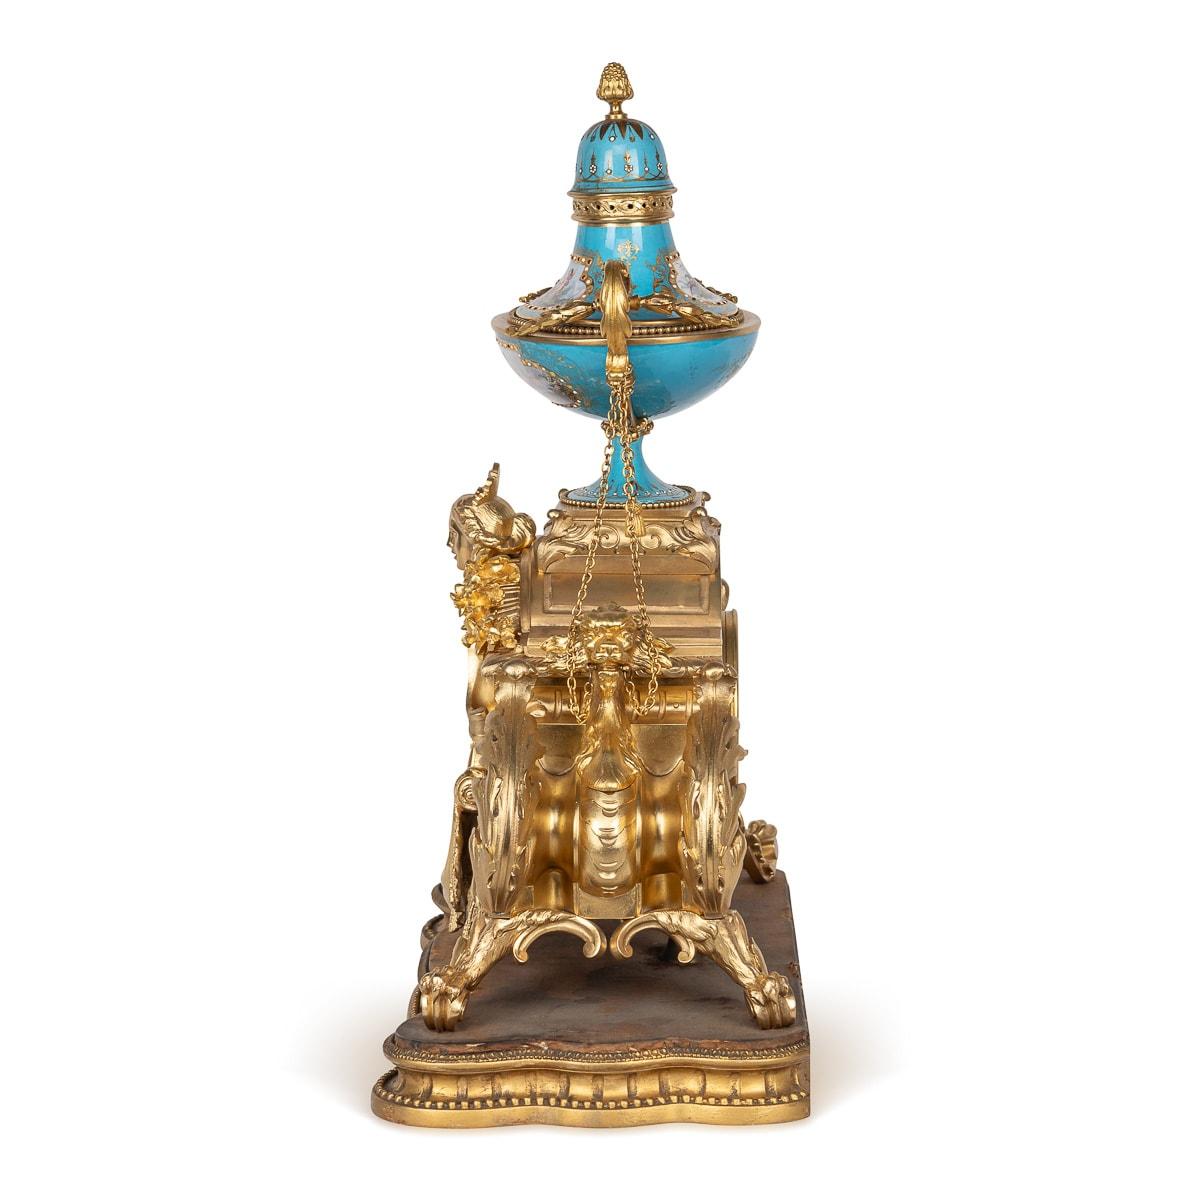 Antike französische Kaminsimsuhr im Stil Ludwigs XV. des 19. Jahrhunderts, ein fesselndes Stück aus Porzellan im Stil von Sèvres und mit Ormolu-Akzenten verziert. Auf der Uhr ruht eine markante, in Bleu Celeste